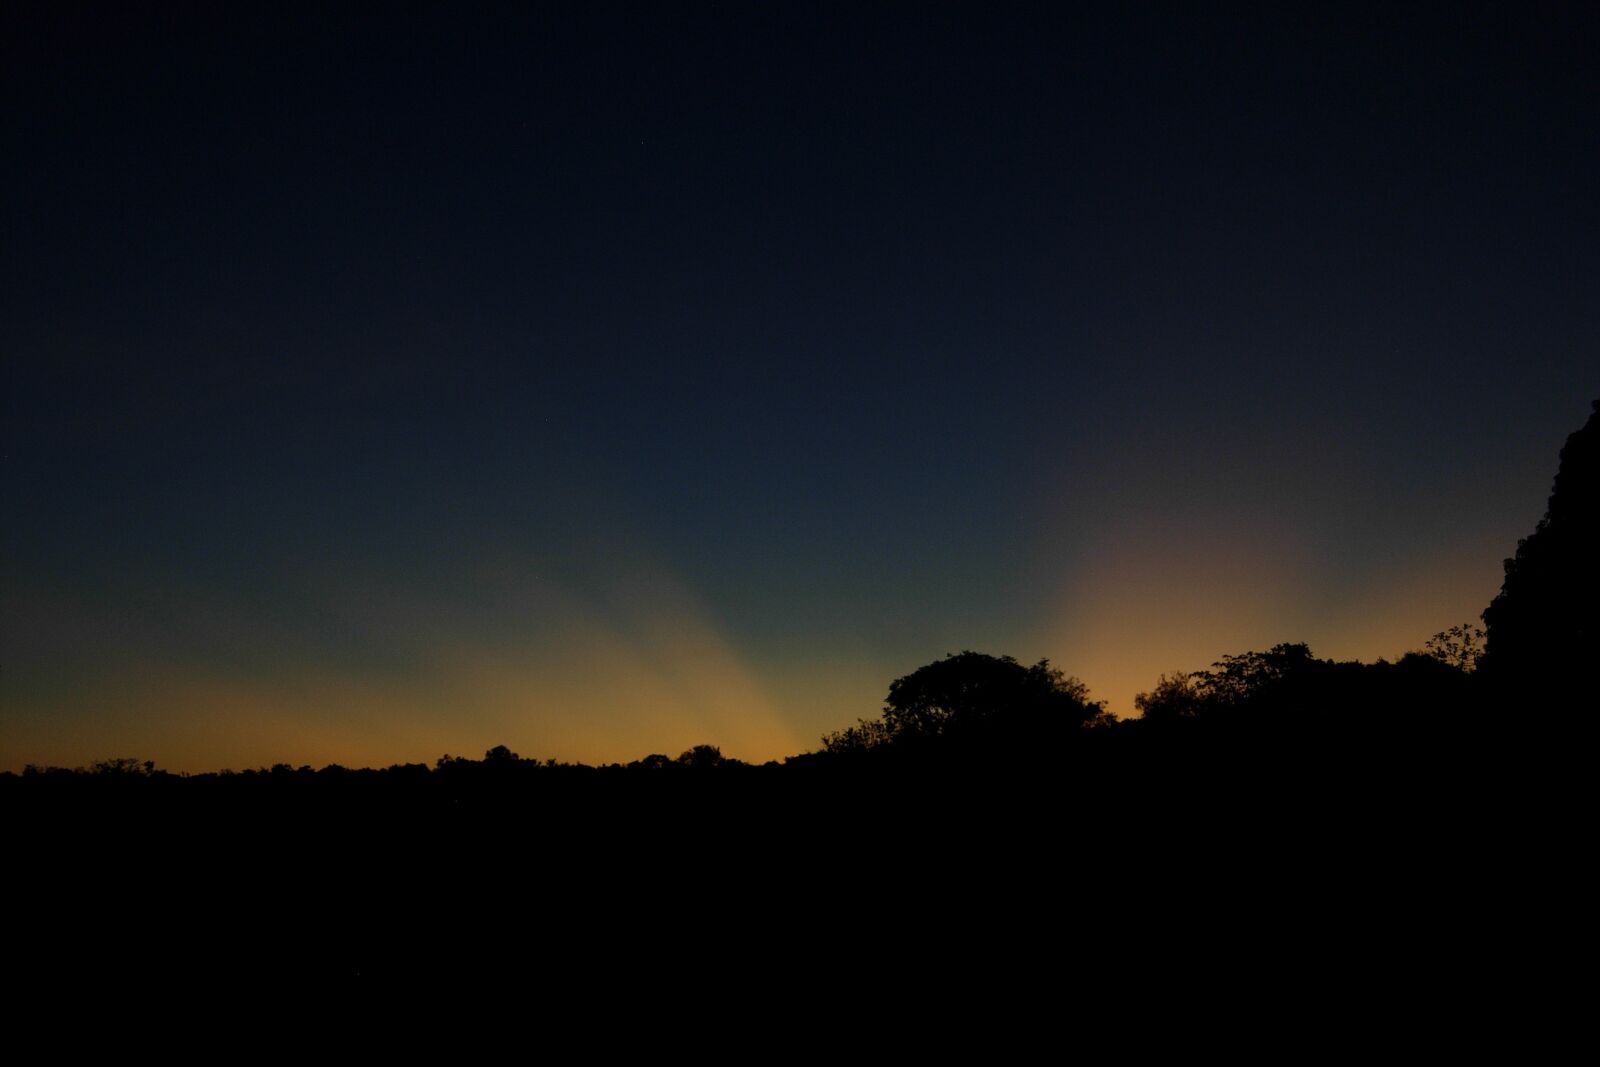 Nikon COOLPIX P3 sample photo. Sunset, guyana, nature photography